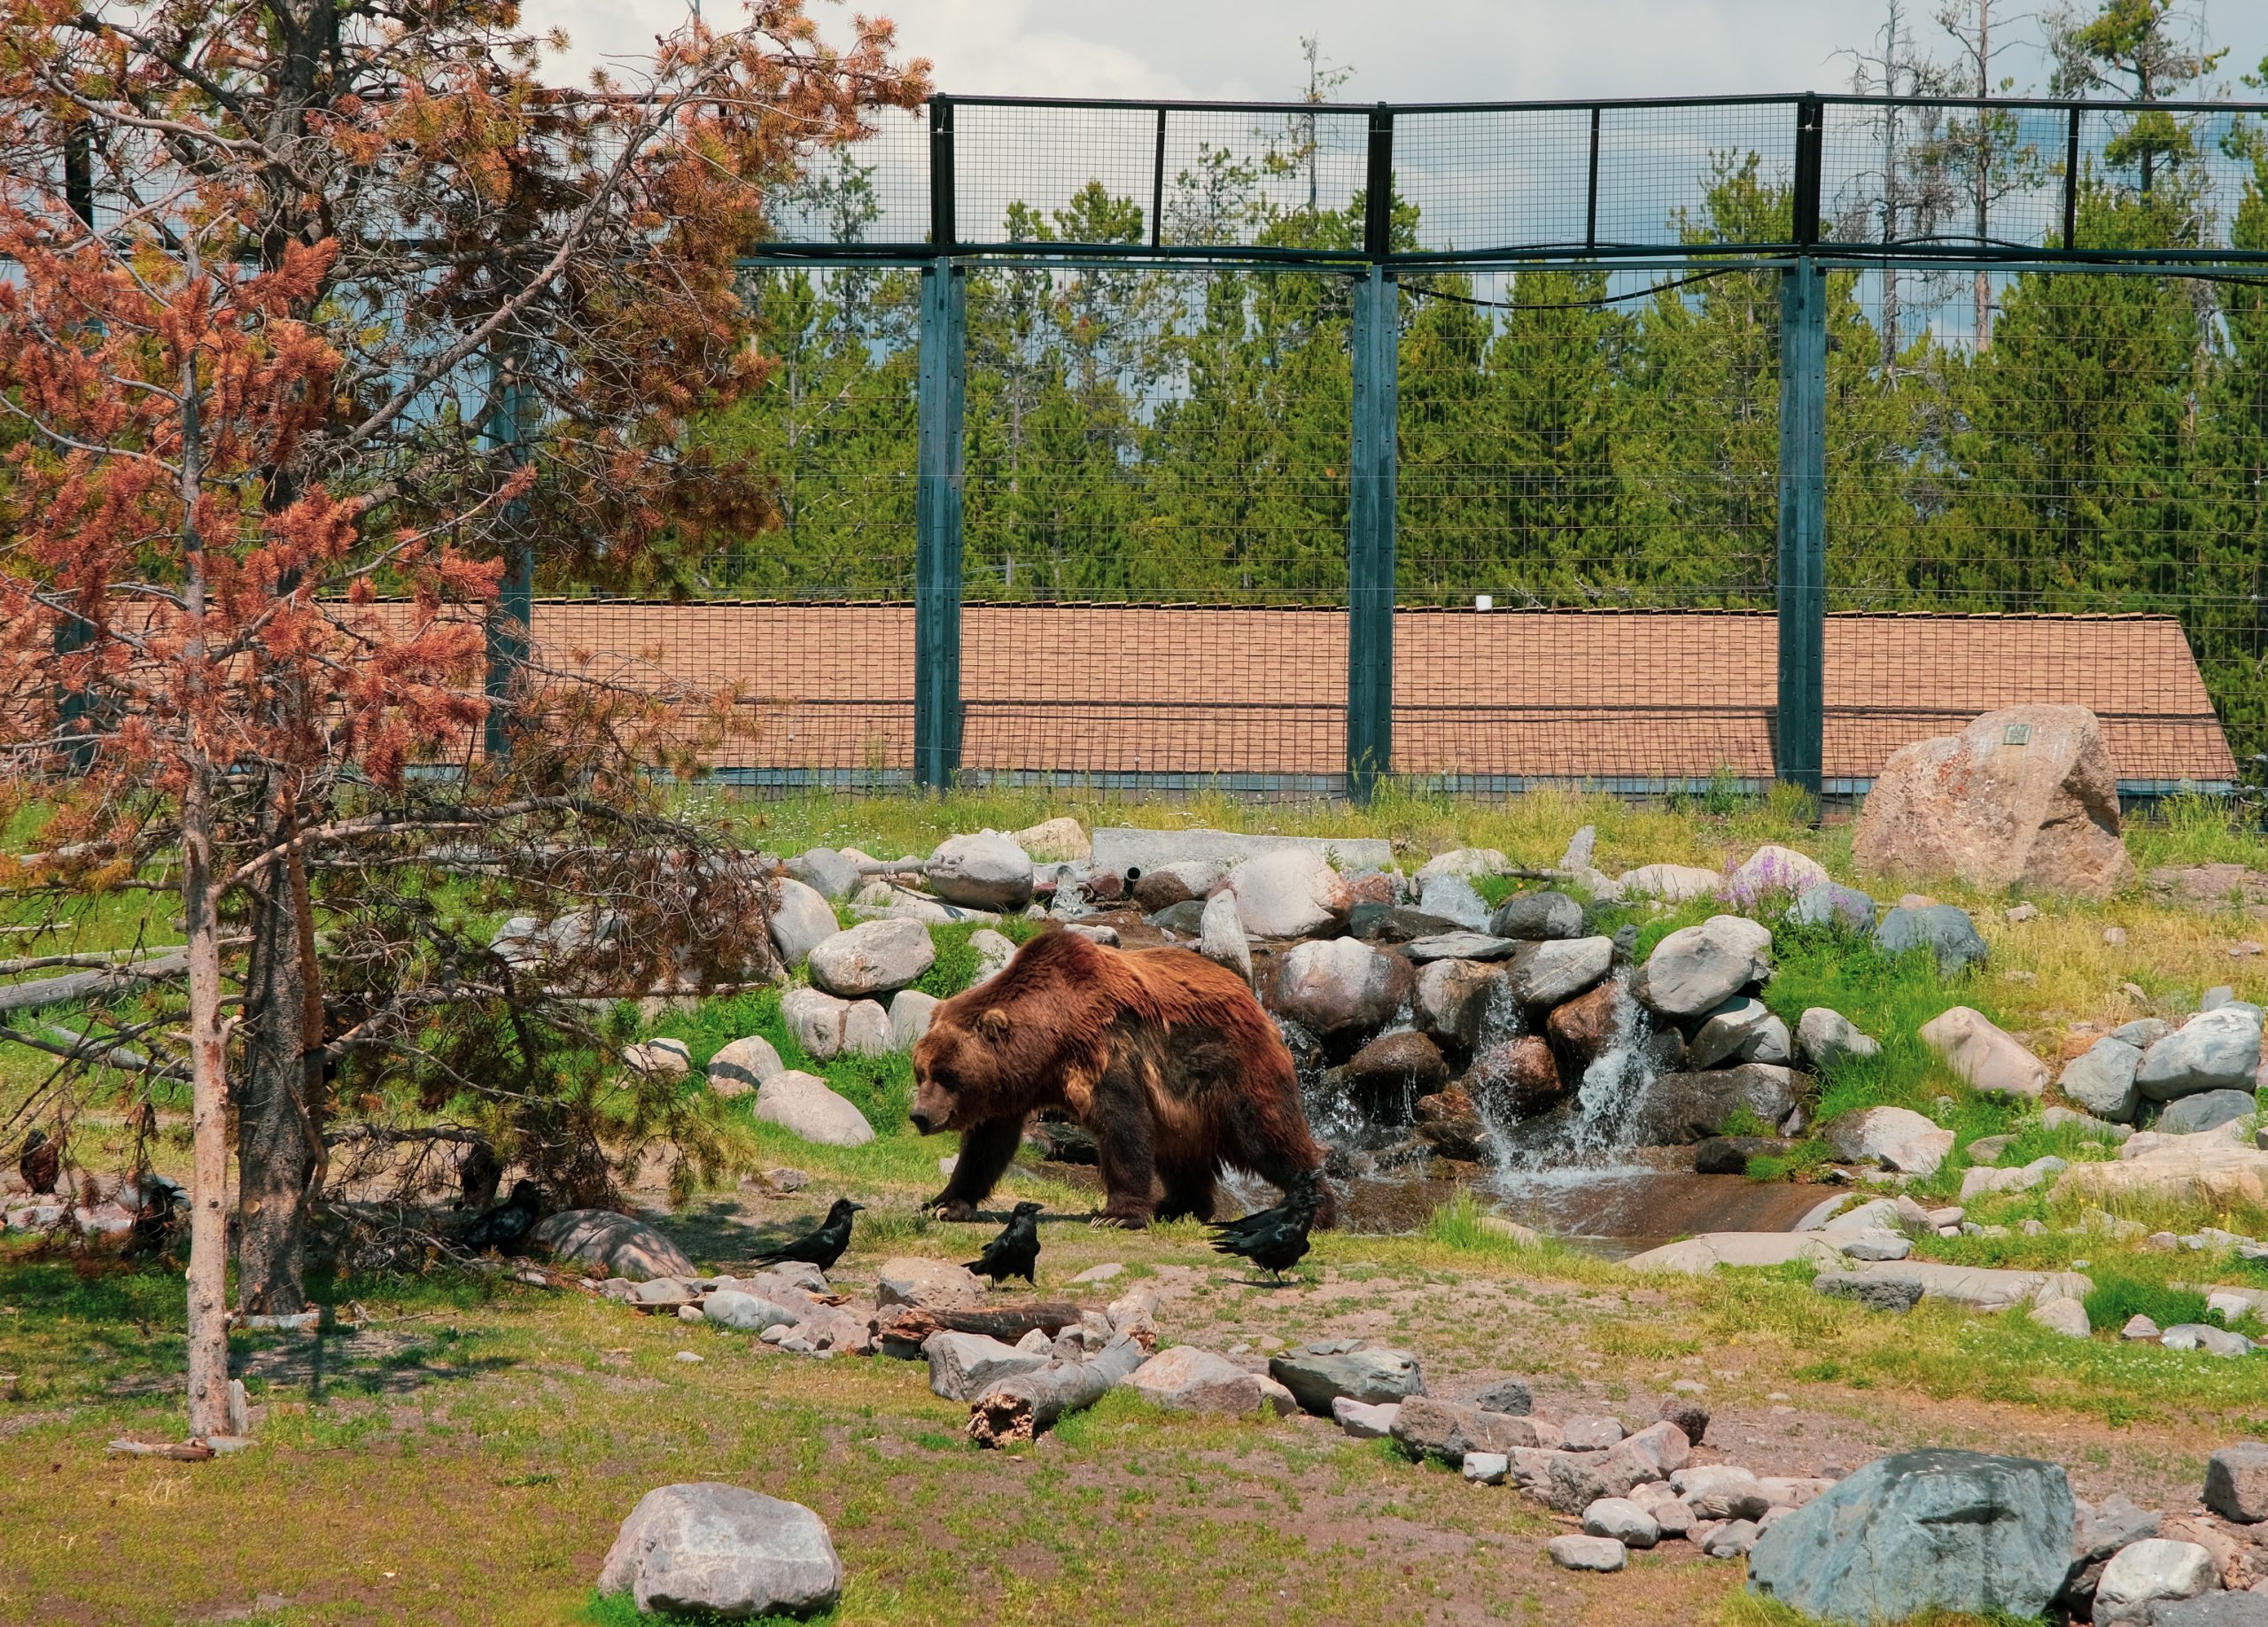 Il più grande orso grizzly del Grizzly and Wolf discovery Center, una grossa forza muscolare di 475 chili